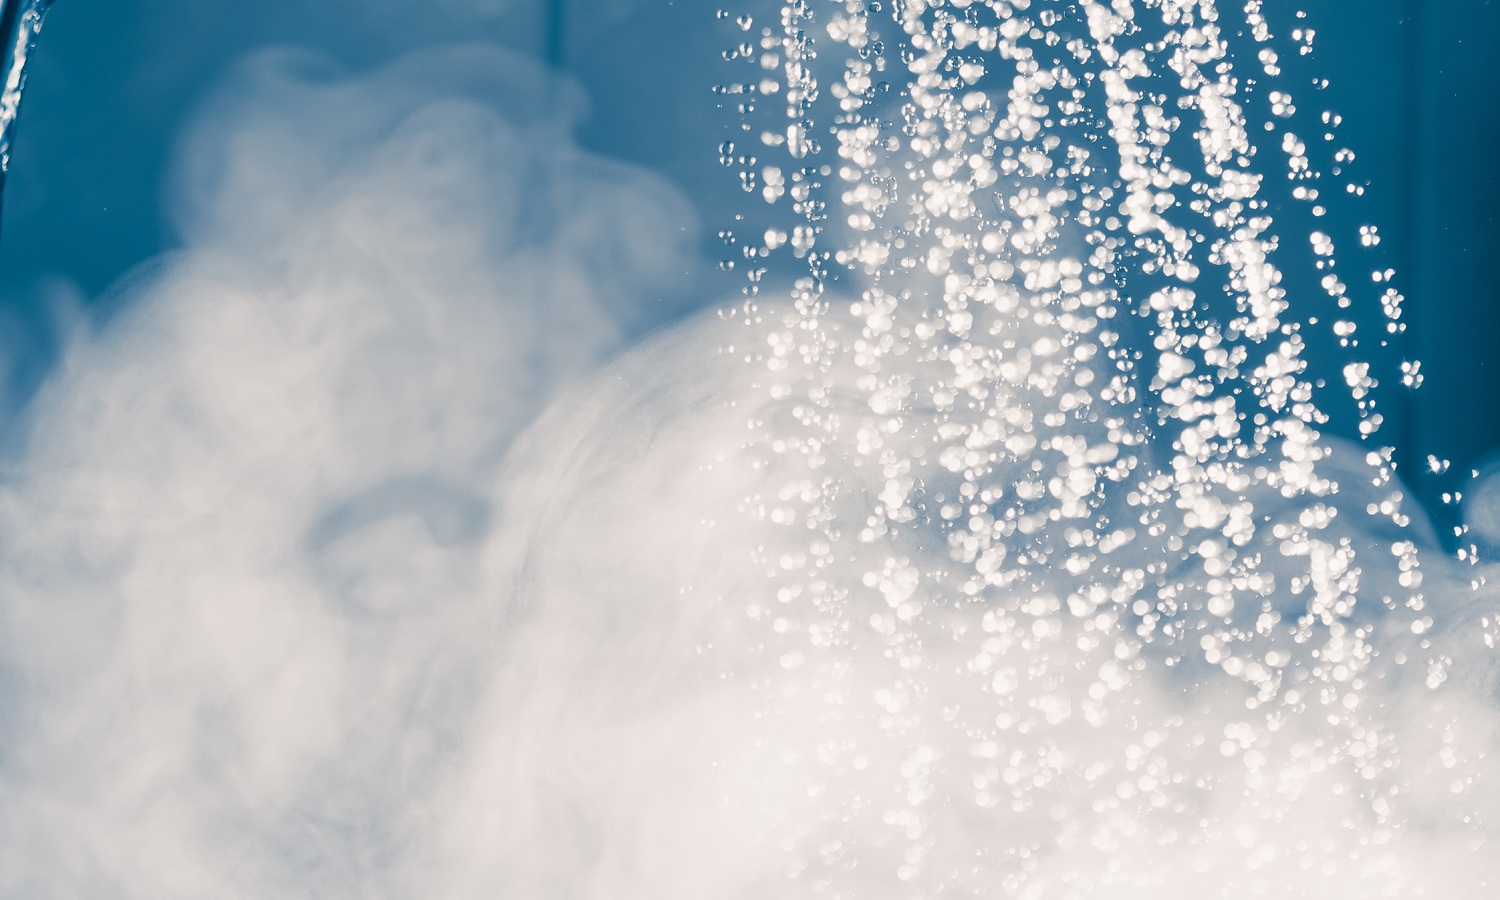 المخاطر الصحية للاستحمام بالماء الساخن: تأثيره على الصحة والقلب والنوم